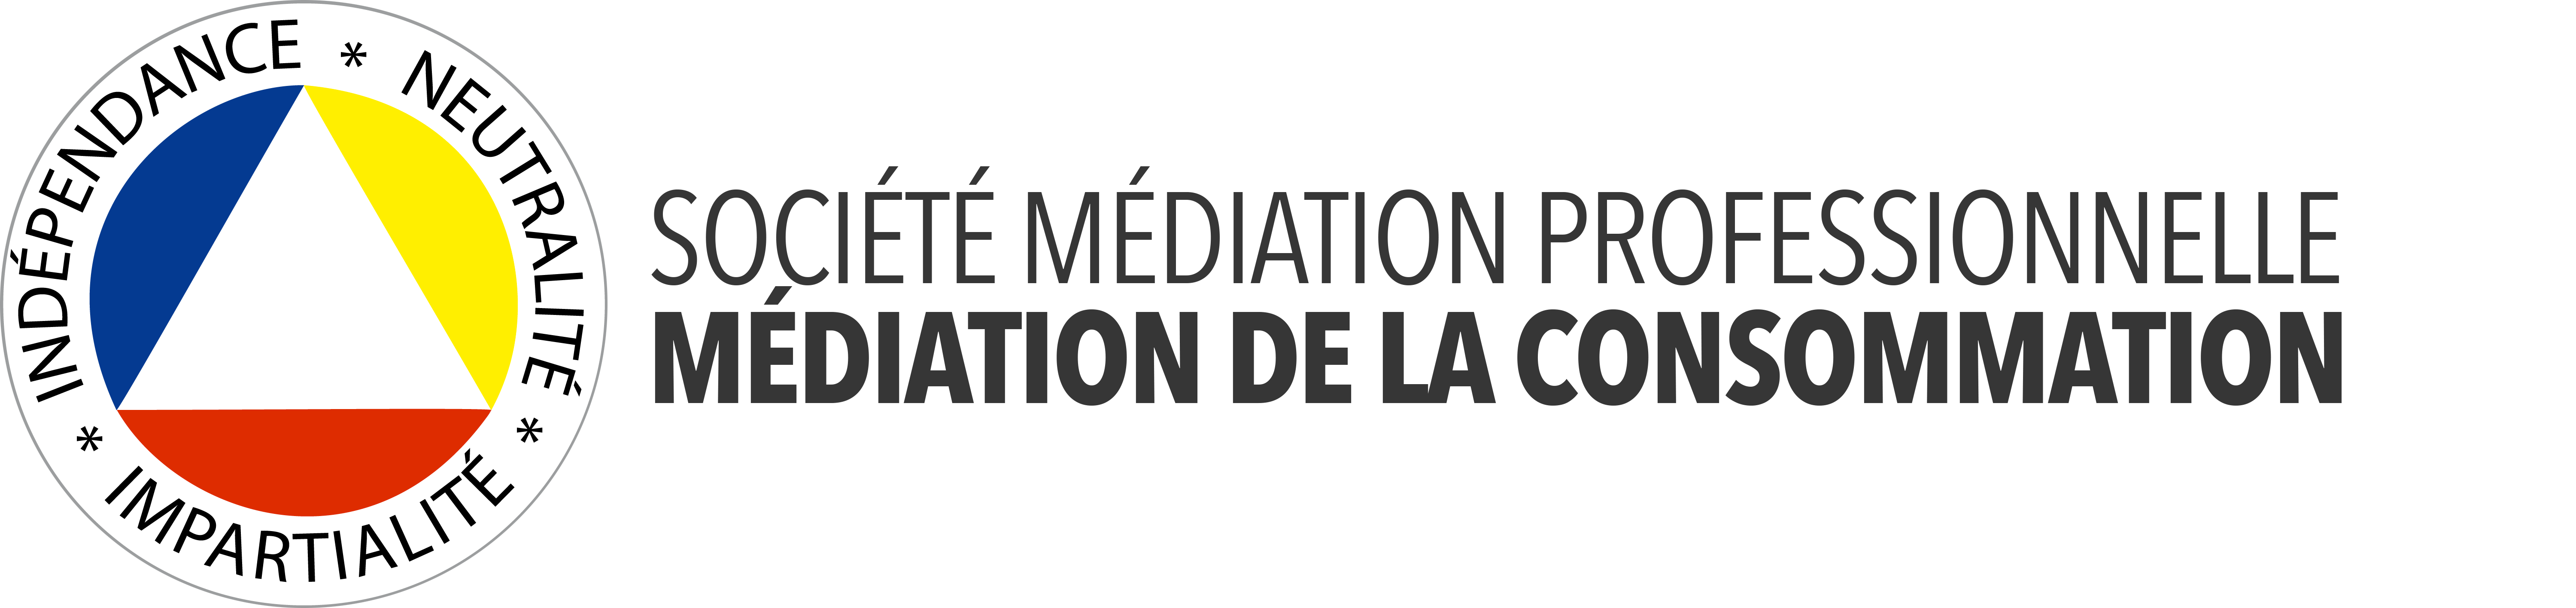 mediation_logo